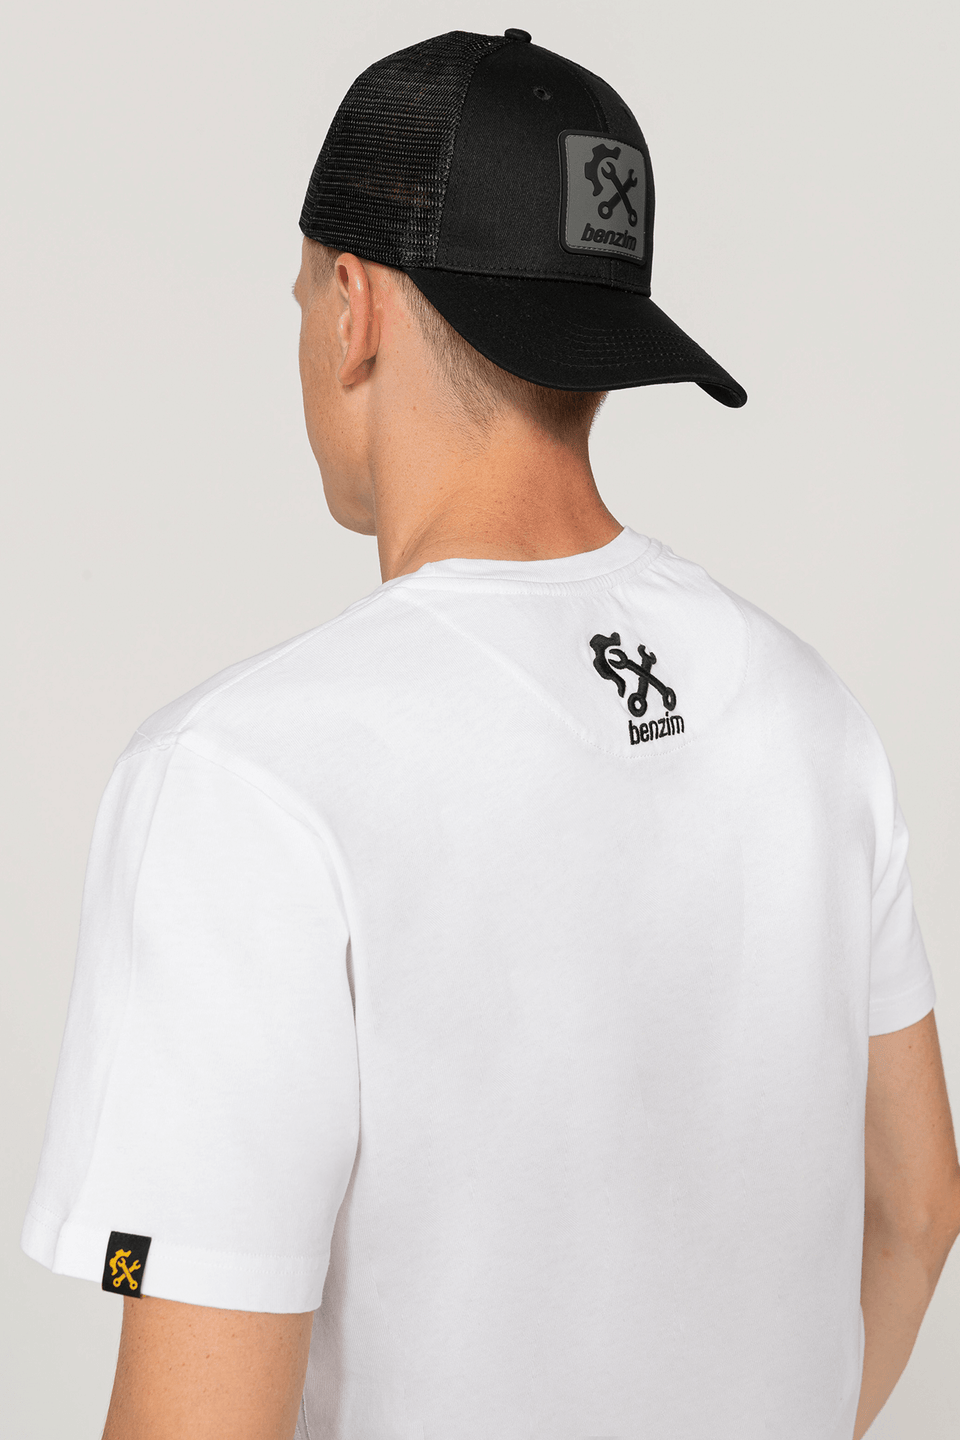 T-Shirt Farbe weiß für Mx-Sport mit schwarzem Logo an Stefan Ekeroli